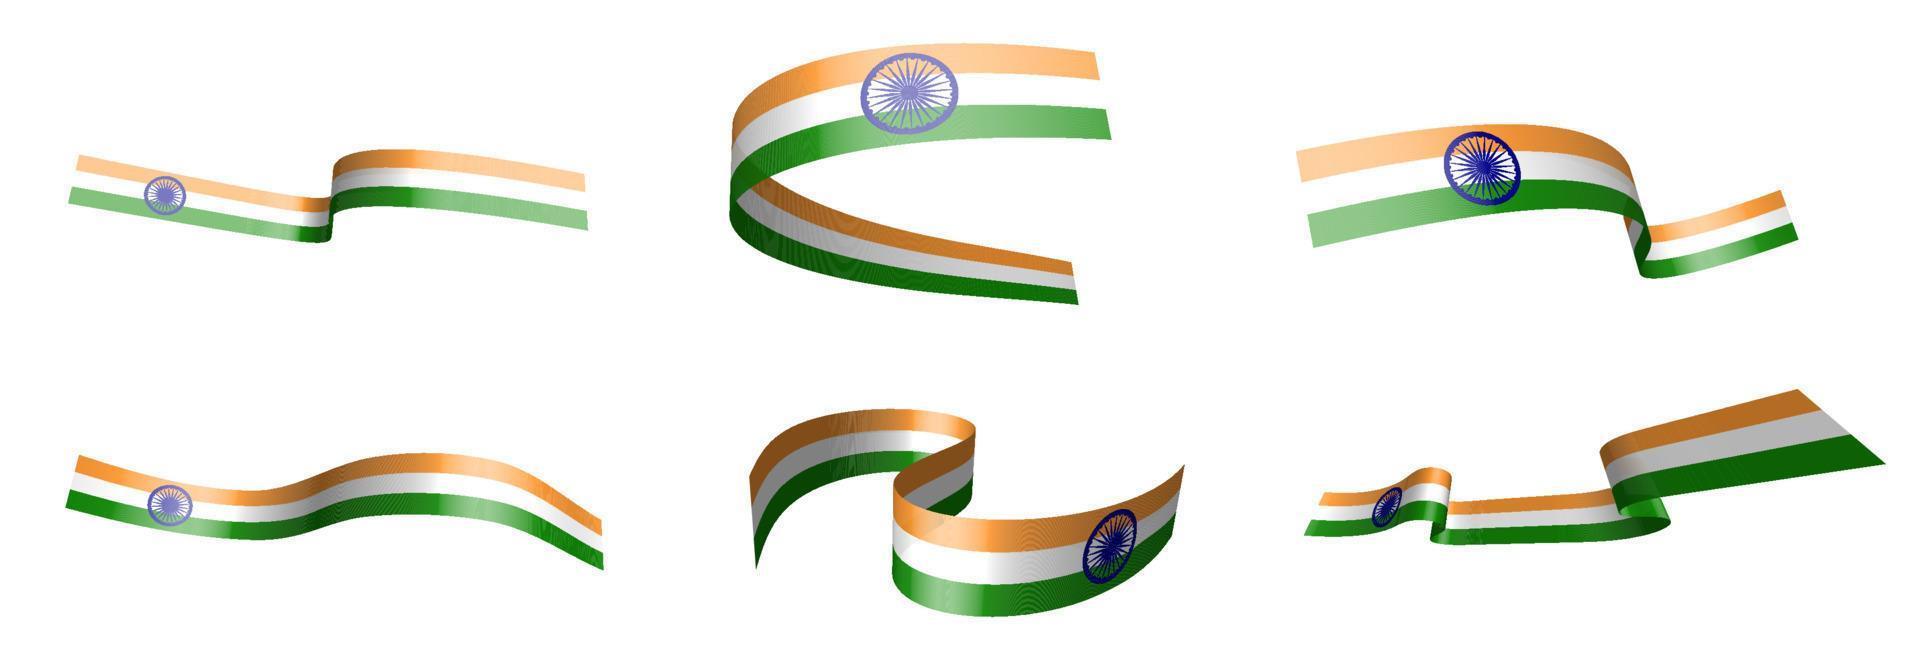 uppsättning semesterband. Indiens flagga vajar i vinden. uppdelning i nedre och övre skikt. designelement. vektor på en vit bakgrund